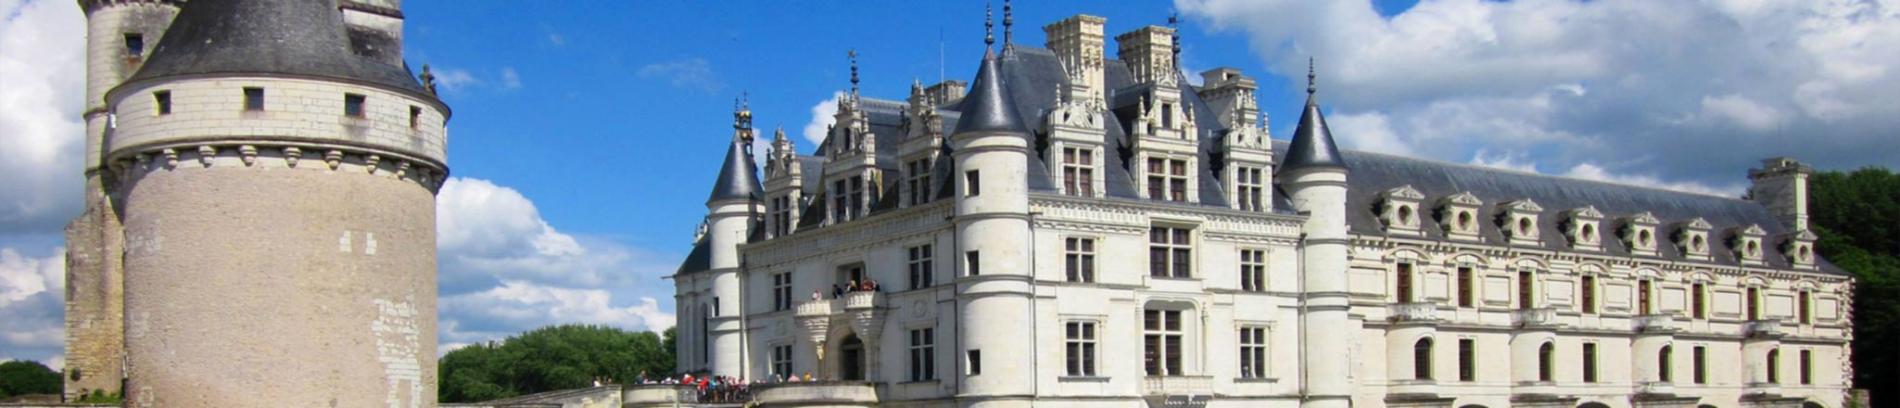 Slide Chateau de la Loire